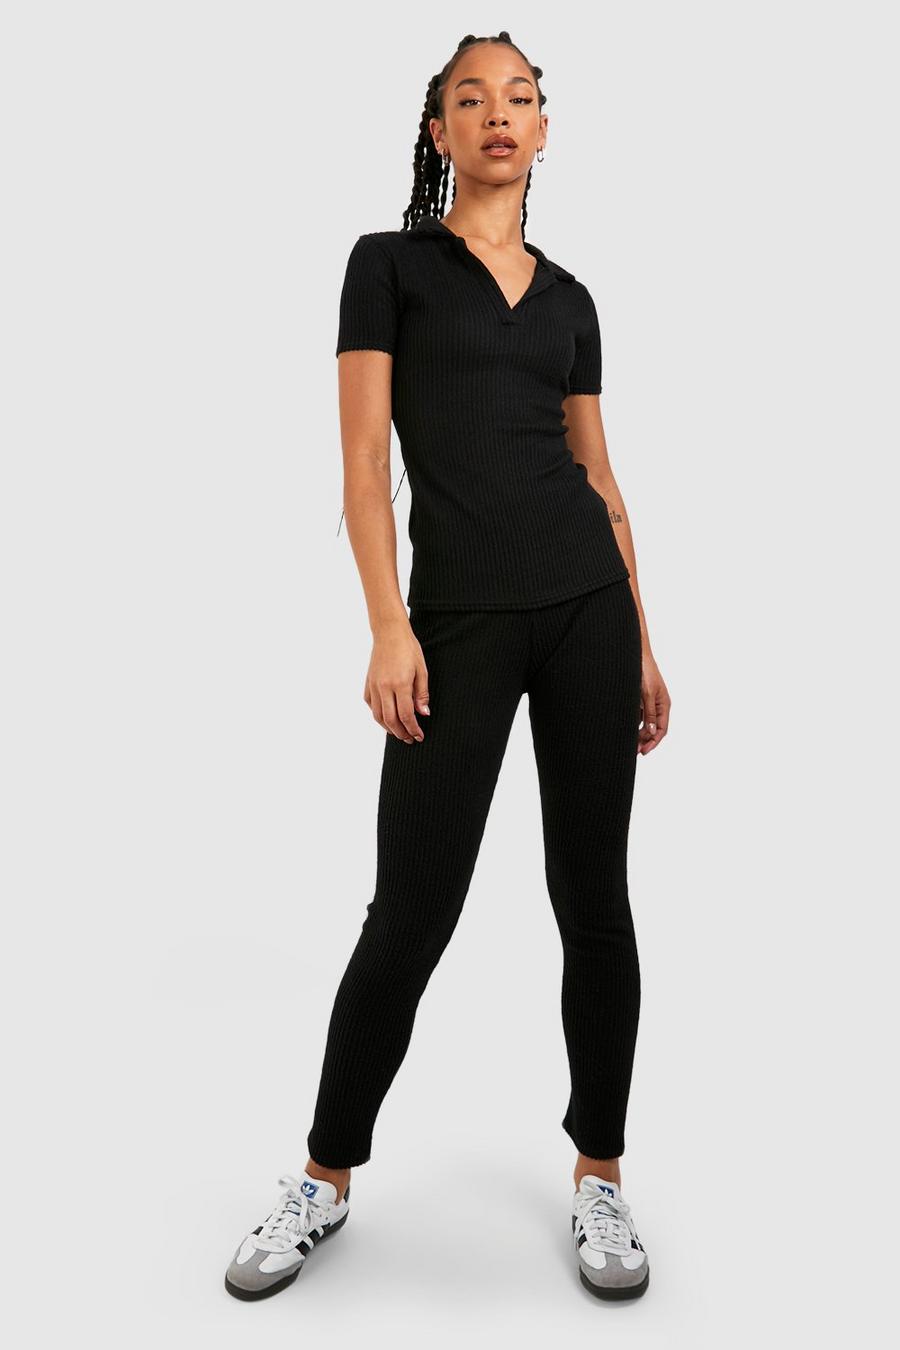 Seamless Leggings for Tall Women in Black